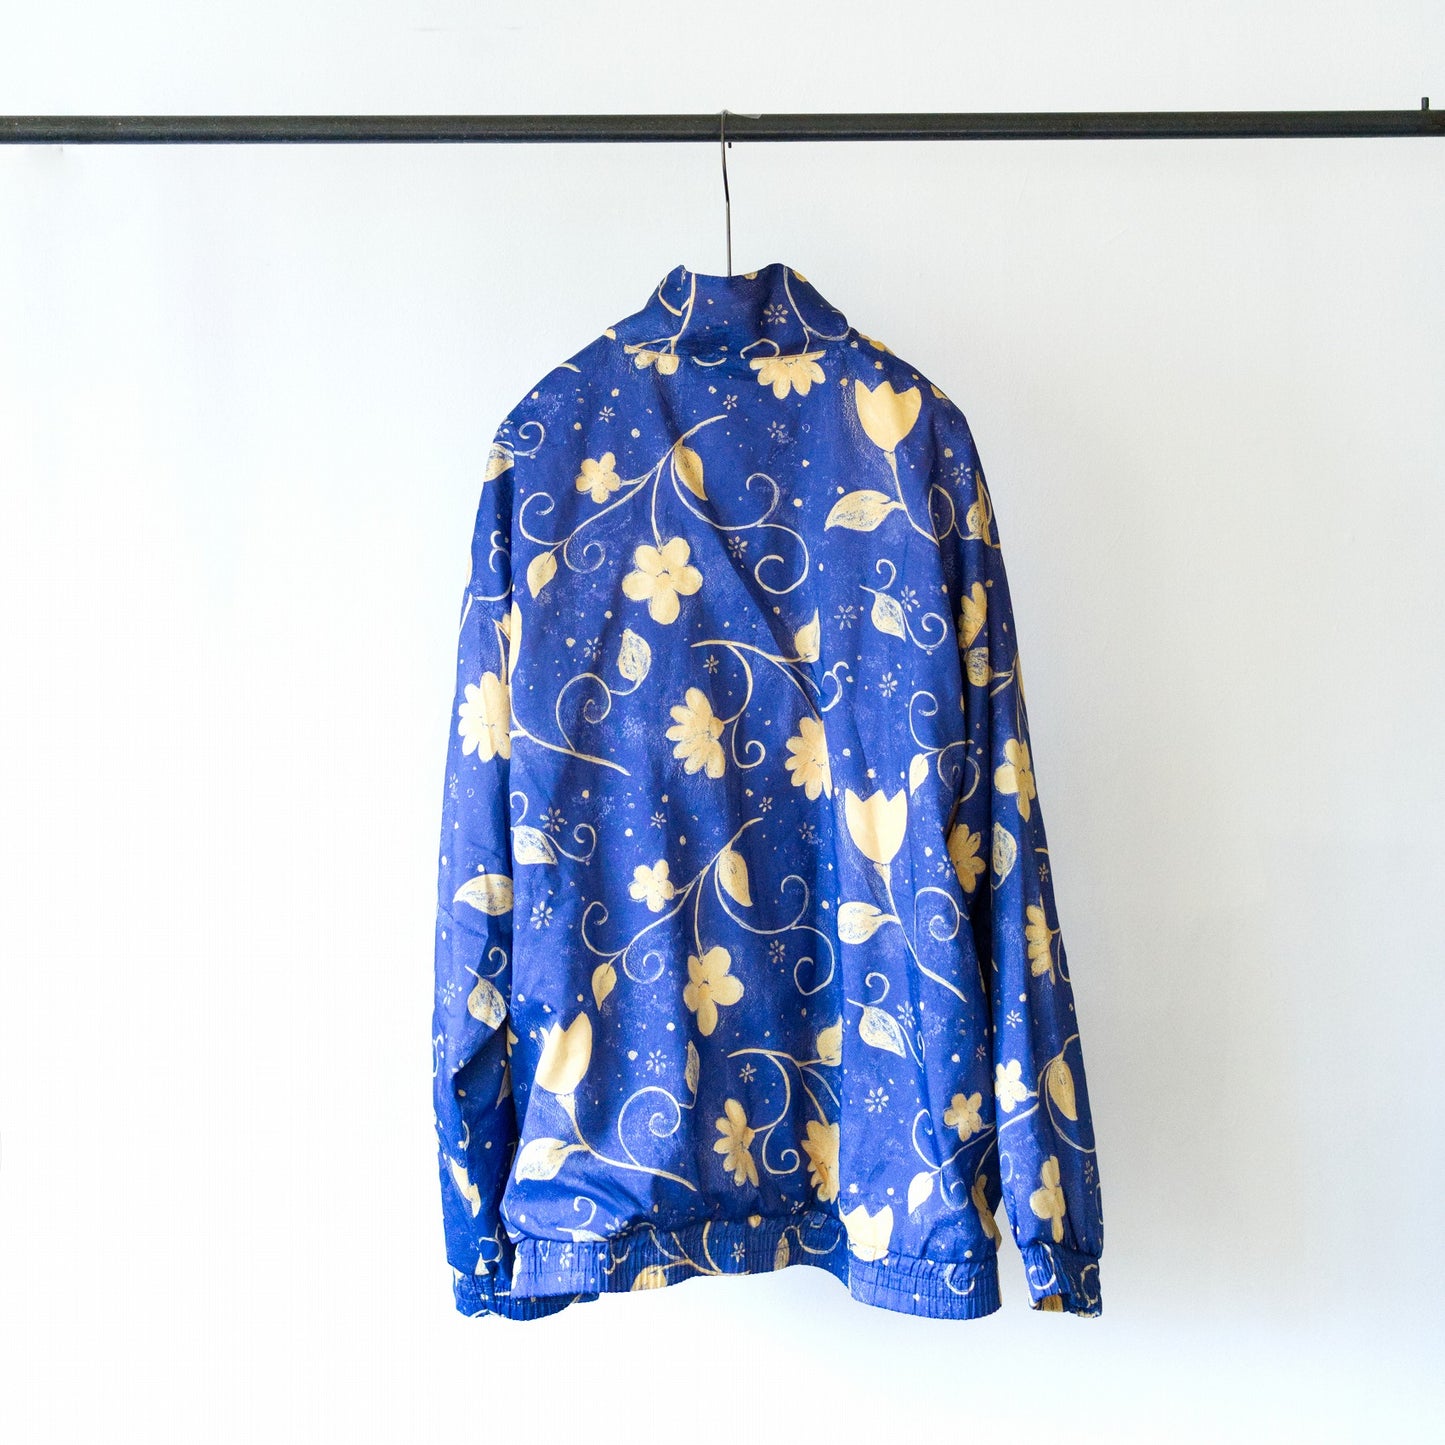 80s Blue floral windbreaker jacket